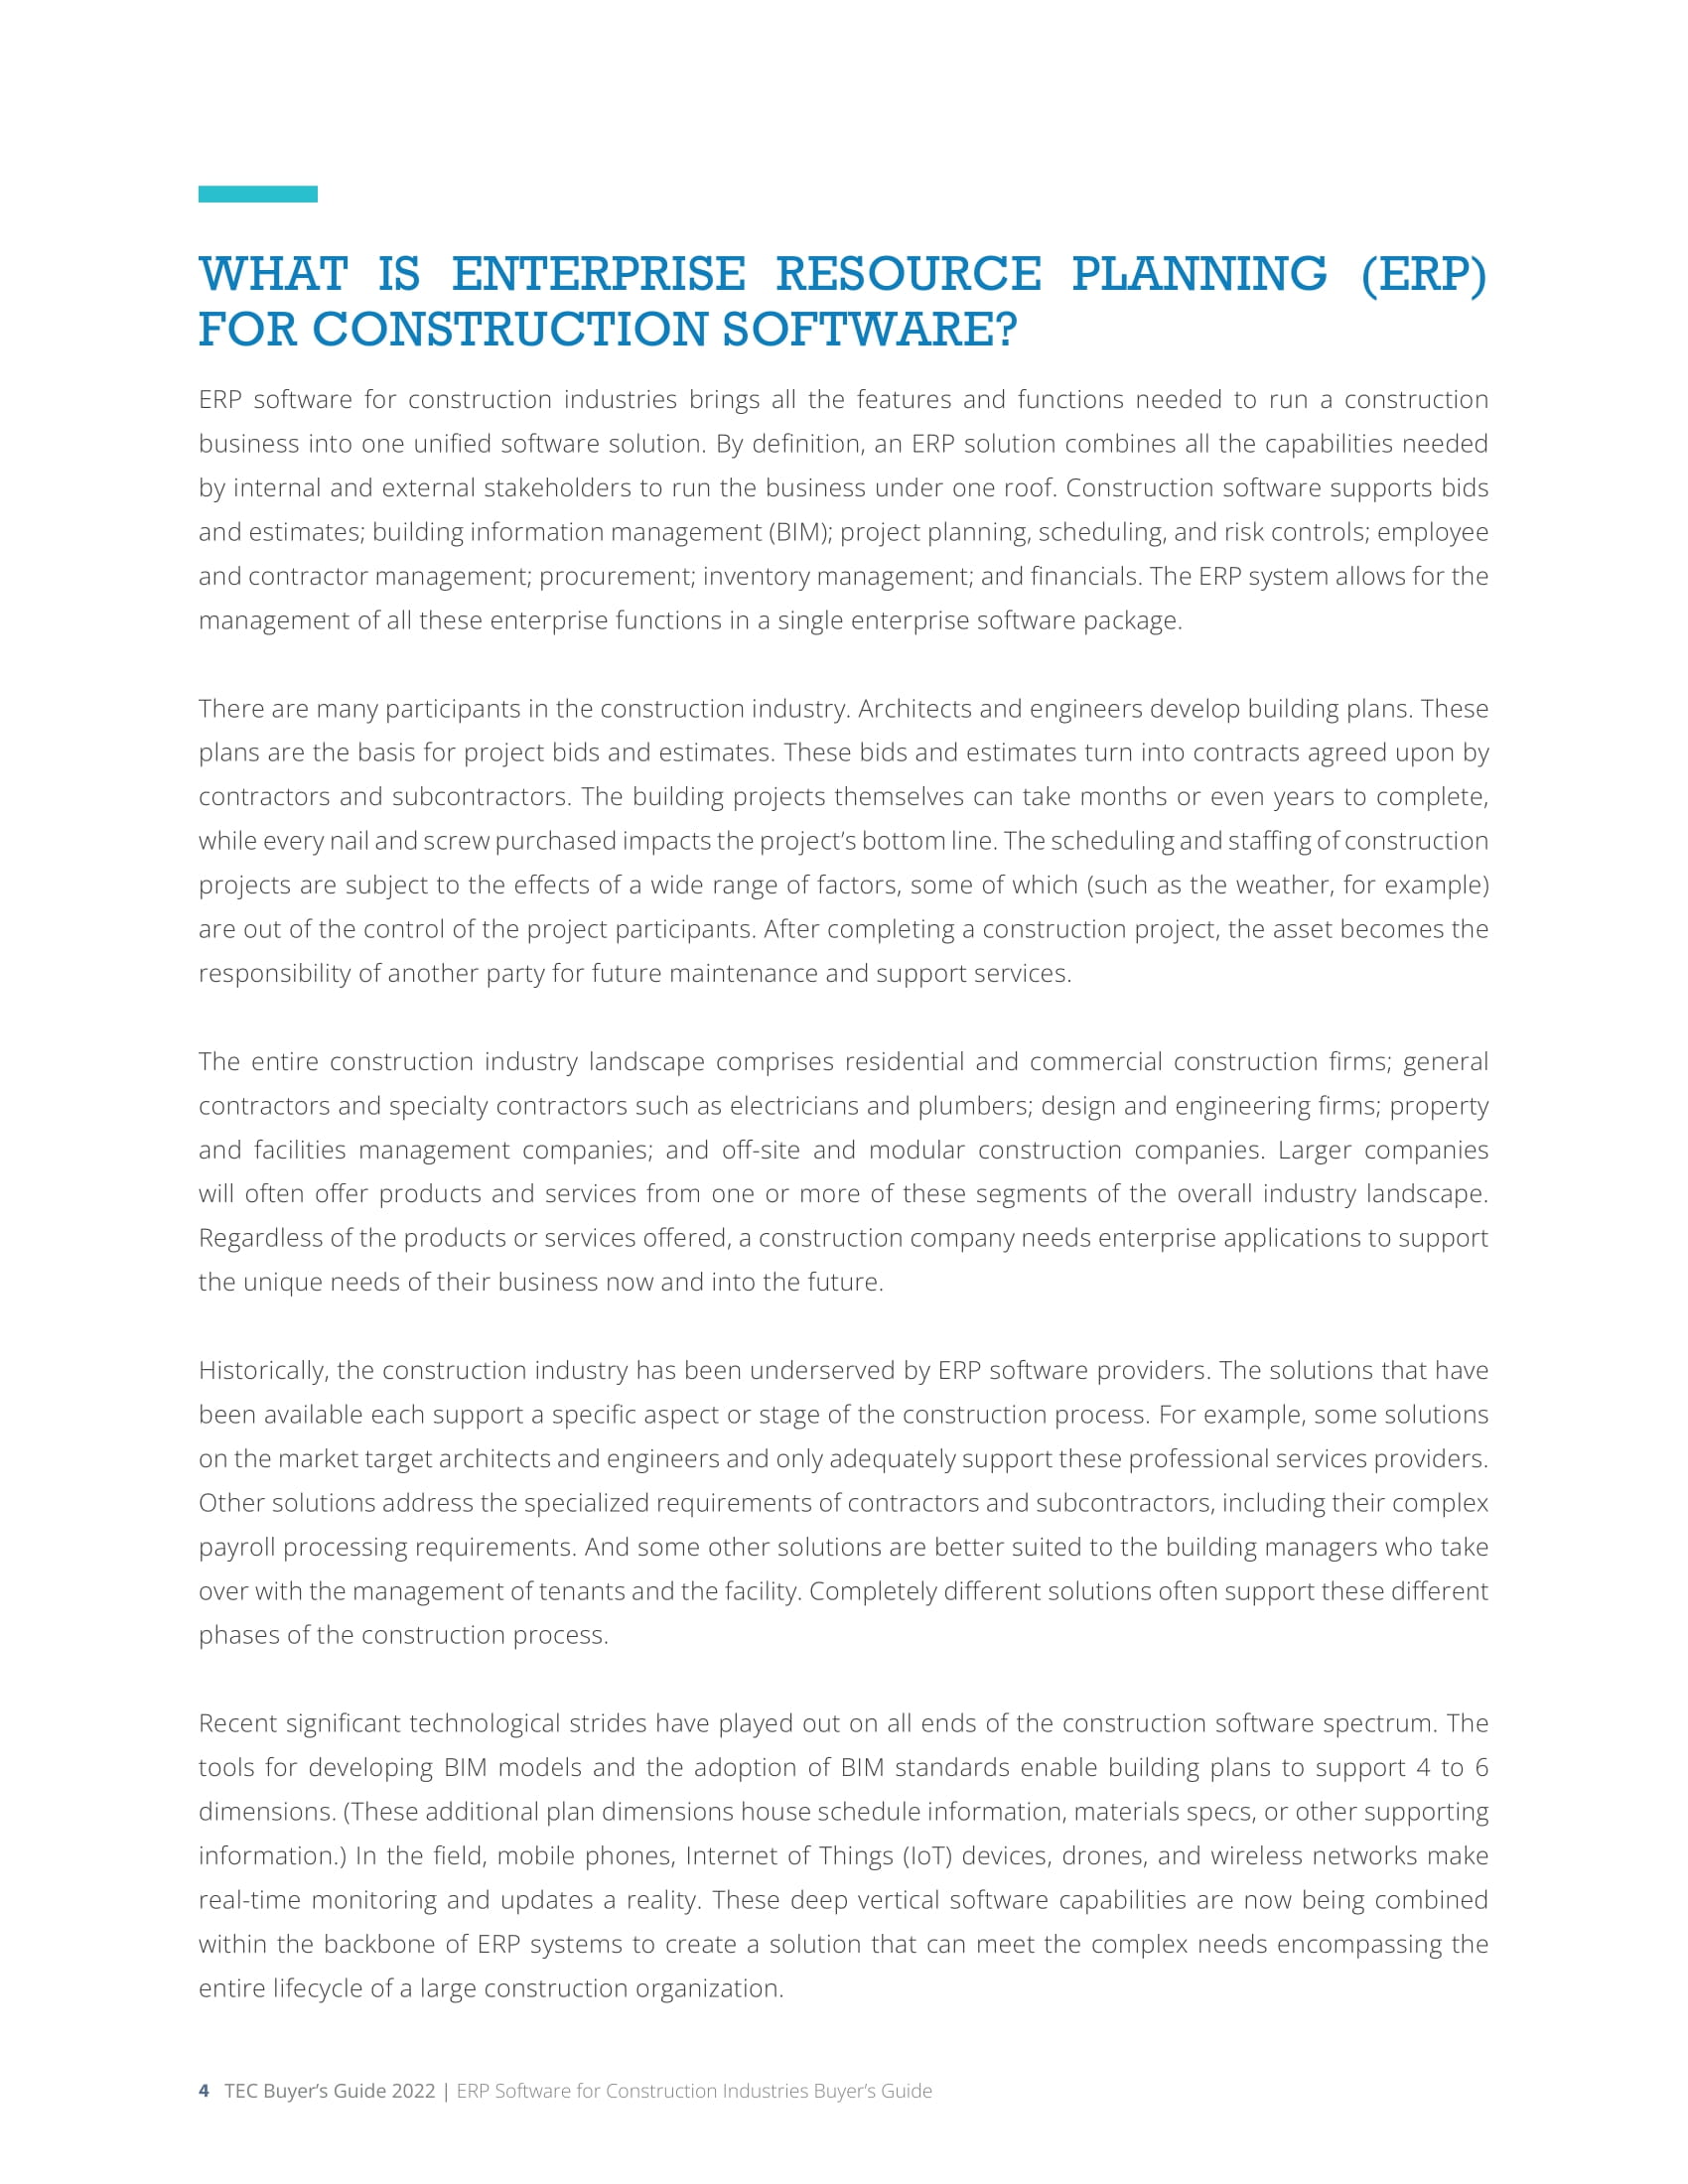 Le guide de l'acheteur de logiciels ERP pour les industries de la construction, réalisé par Technology Evaluation Centers (TEC), présente Acumatica, page 3.